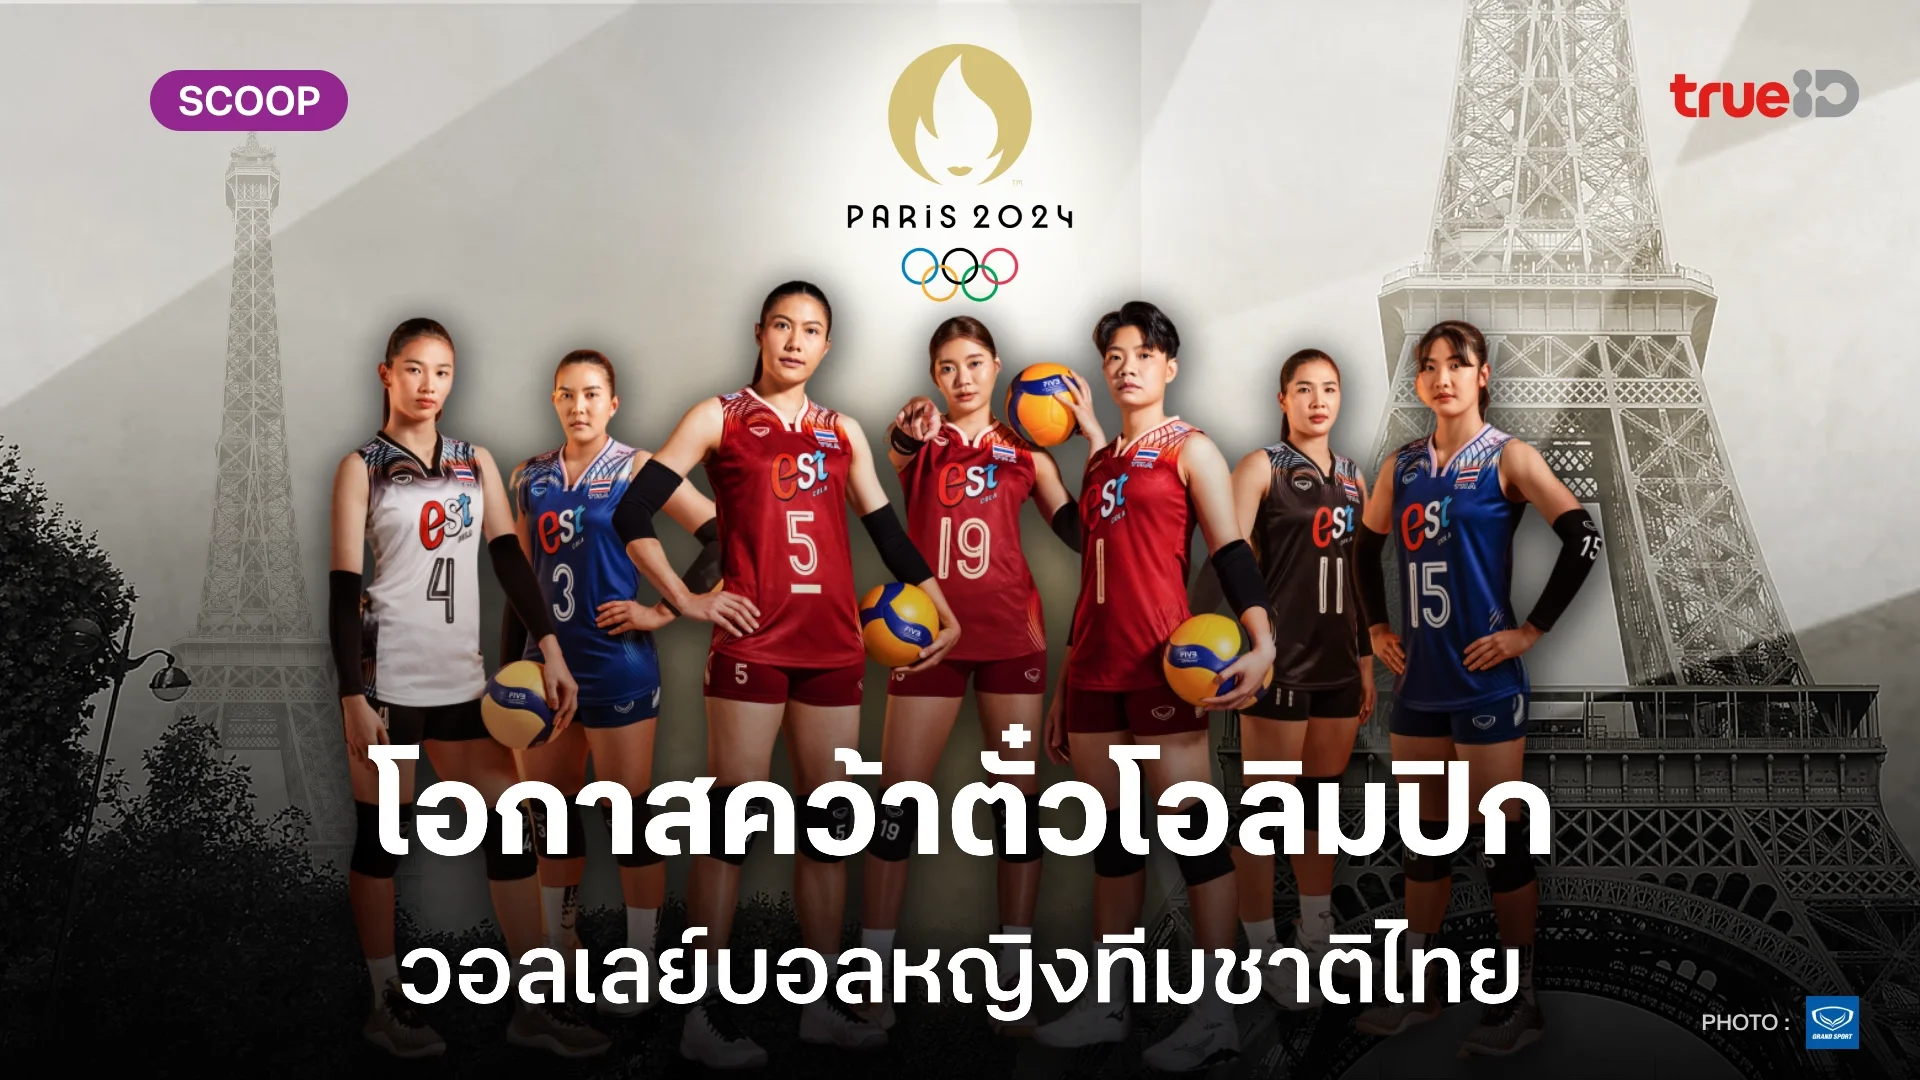 เป็นไปได้ไหม? วิเคราะห์โอกาส ทัพนักตบสาวไทย ลุ้นคว้าตั๋วโอลิมปิก 2024